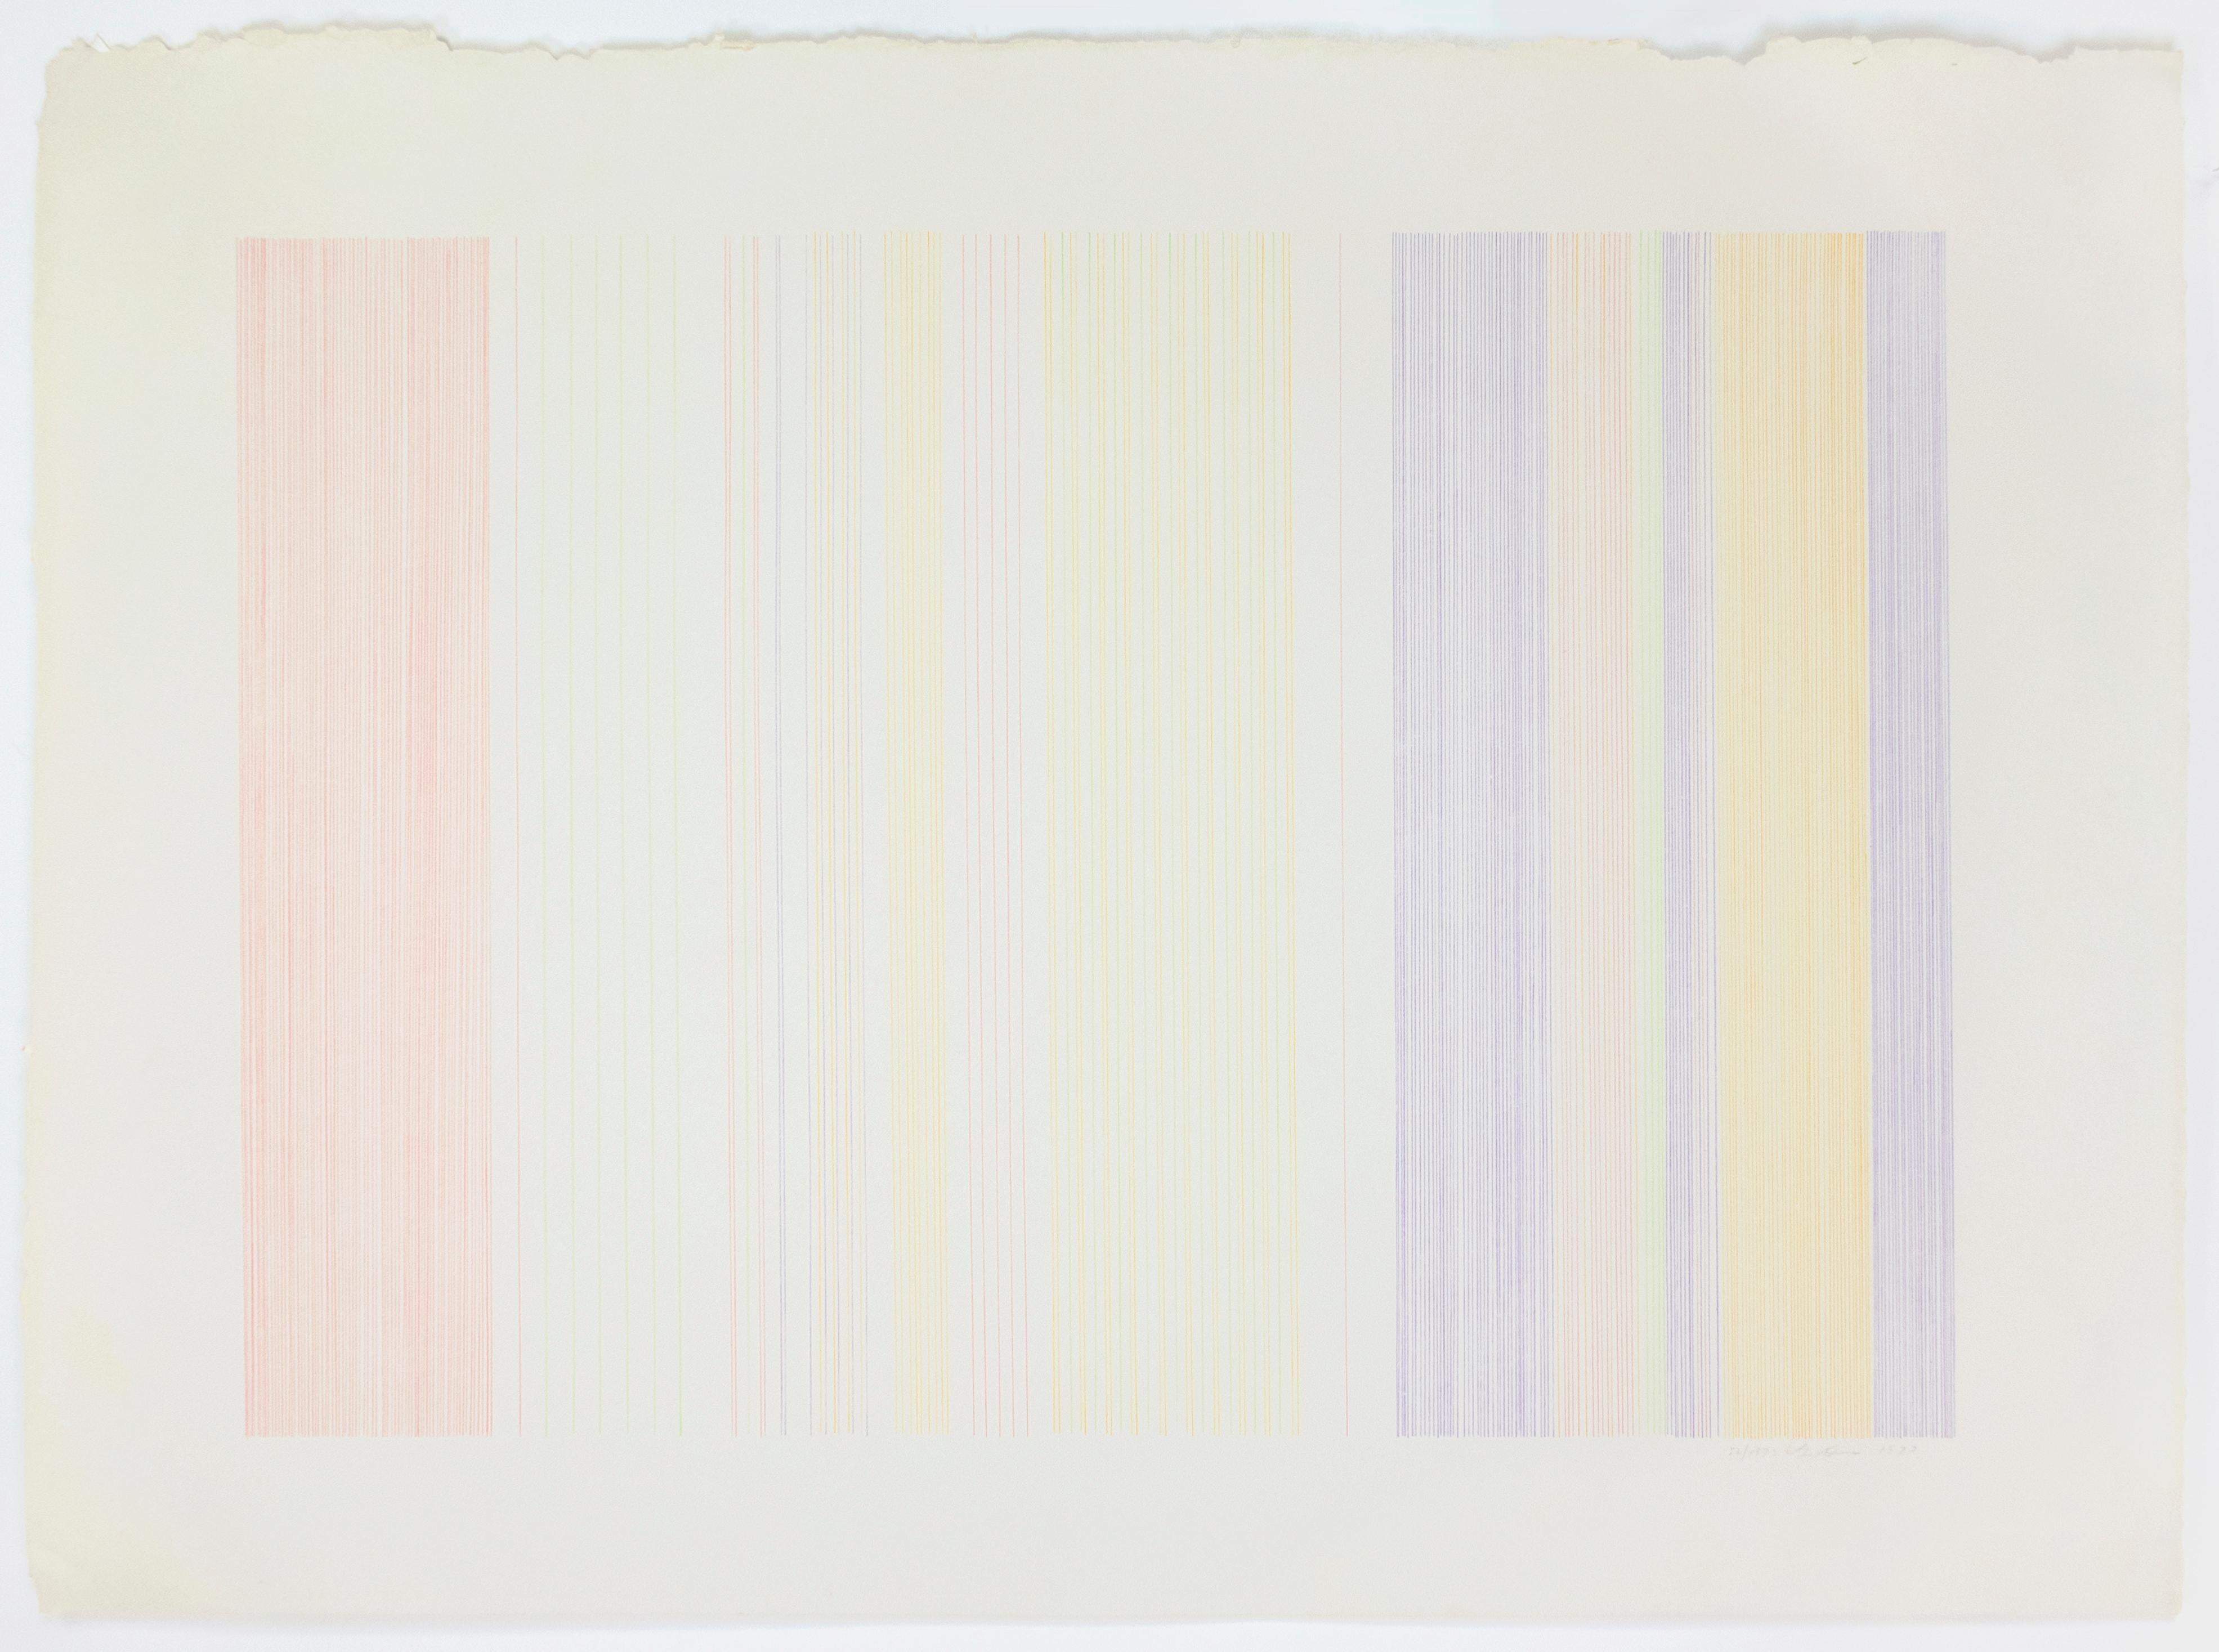 Home Run: Abstrakte moderne minimalistische Farbfeldzeichnung mit Regenbogenfarben